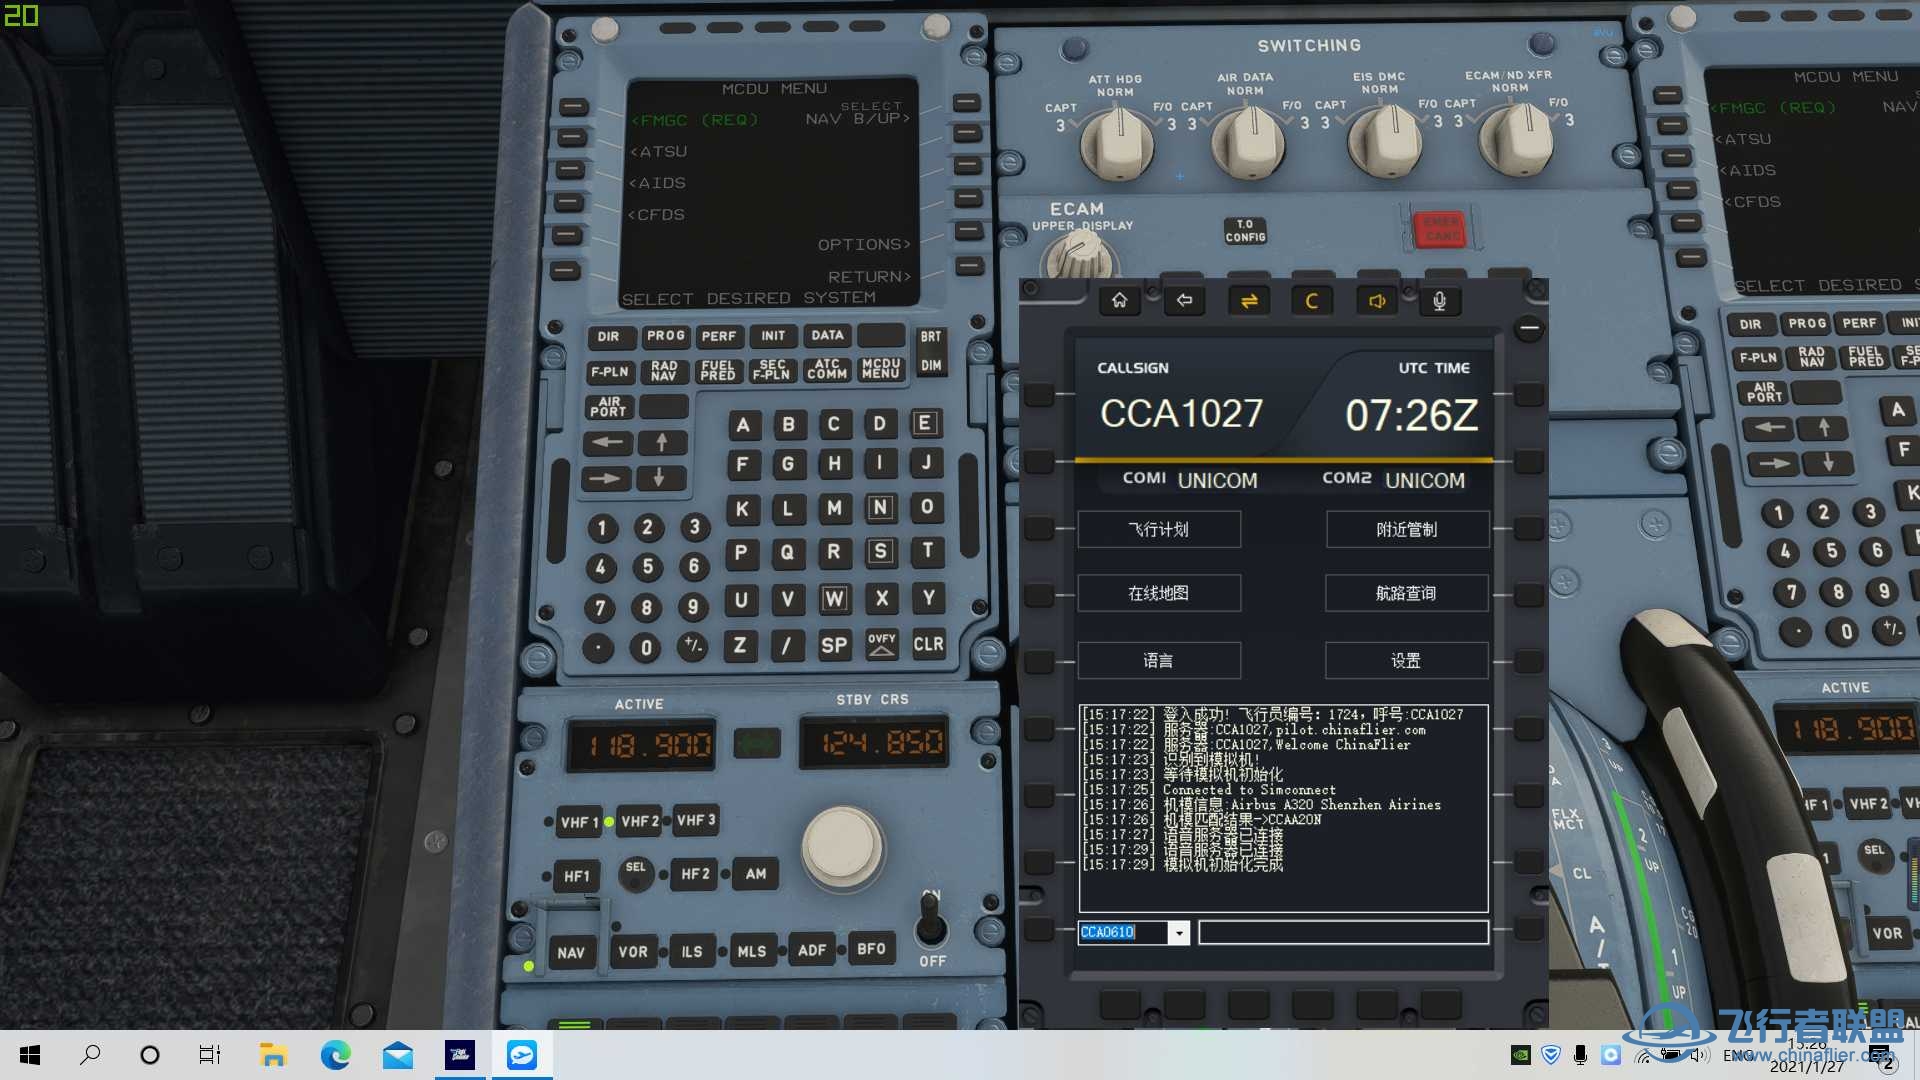 【求助】连飞软件COM1 COM2一直显示UNICOM-3679 